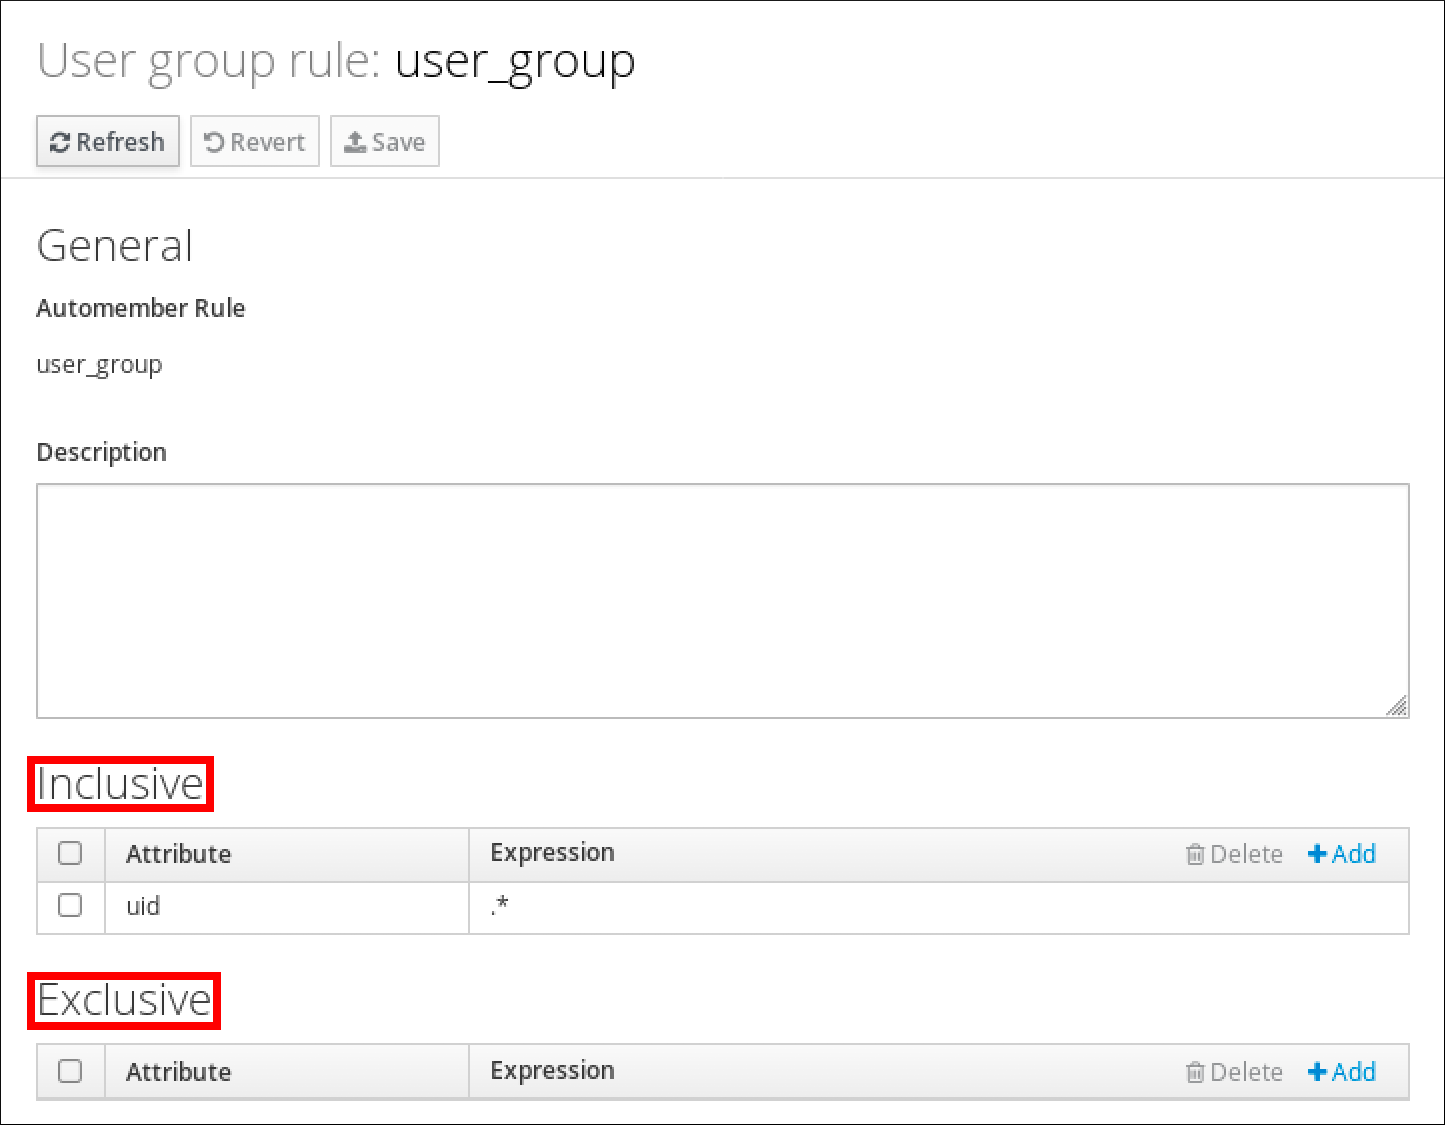 ユーザーグループルール "user_group" の詳細のスクリーンショット。General のセクションがあり、そこには Automember ルールの名前と Description セクションが表示されます。下部には Inclusive セクションがあり、その中のテーブルには Attribute と Expression のラベルが付いたエントリーが表示されています。この表には、エントリーが 1 つあり、属性に uid 、式に .* が入力されています。一番下には、Inclusive テーブルの構造と同じテーブルを含む Exclusive セクションがありますが、エントリーはありません。